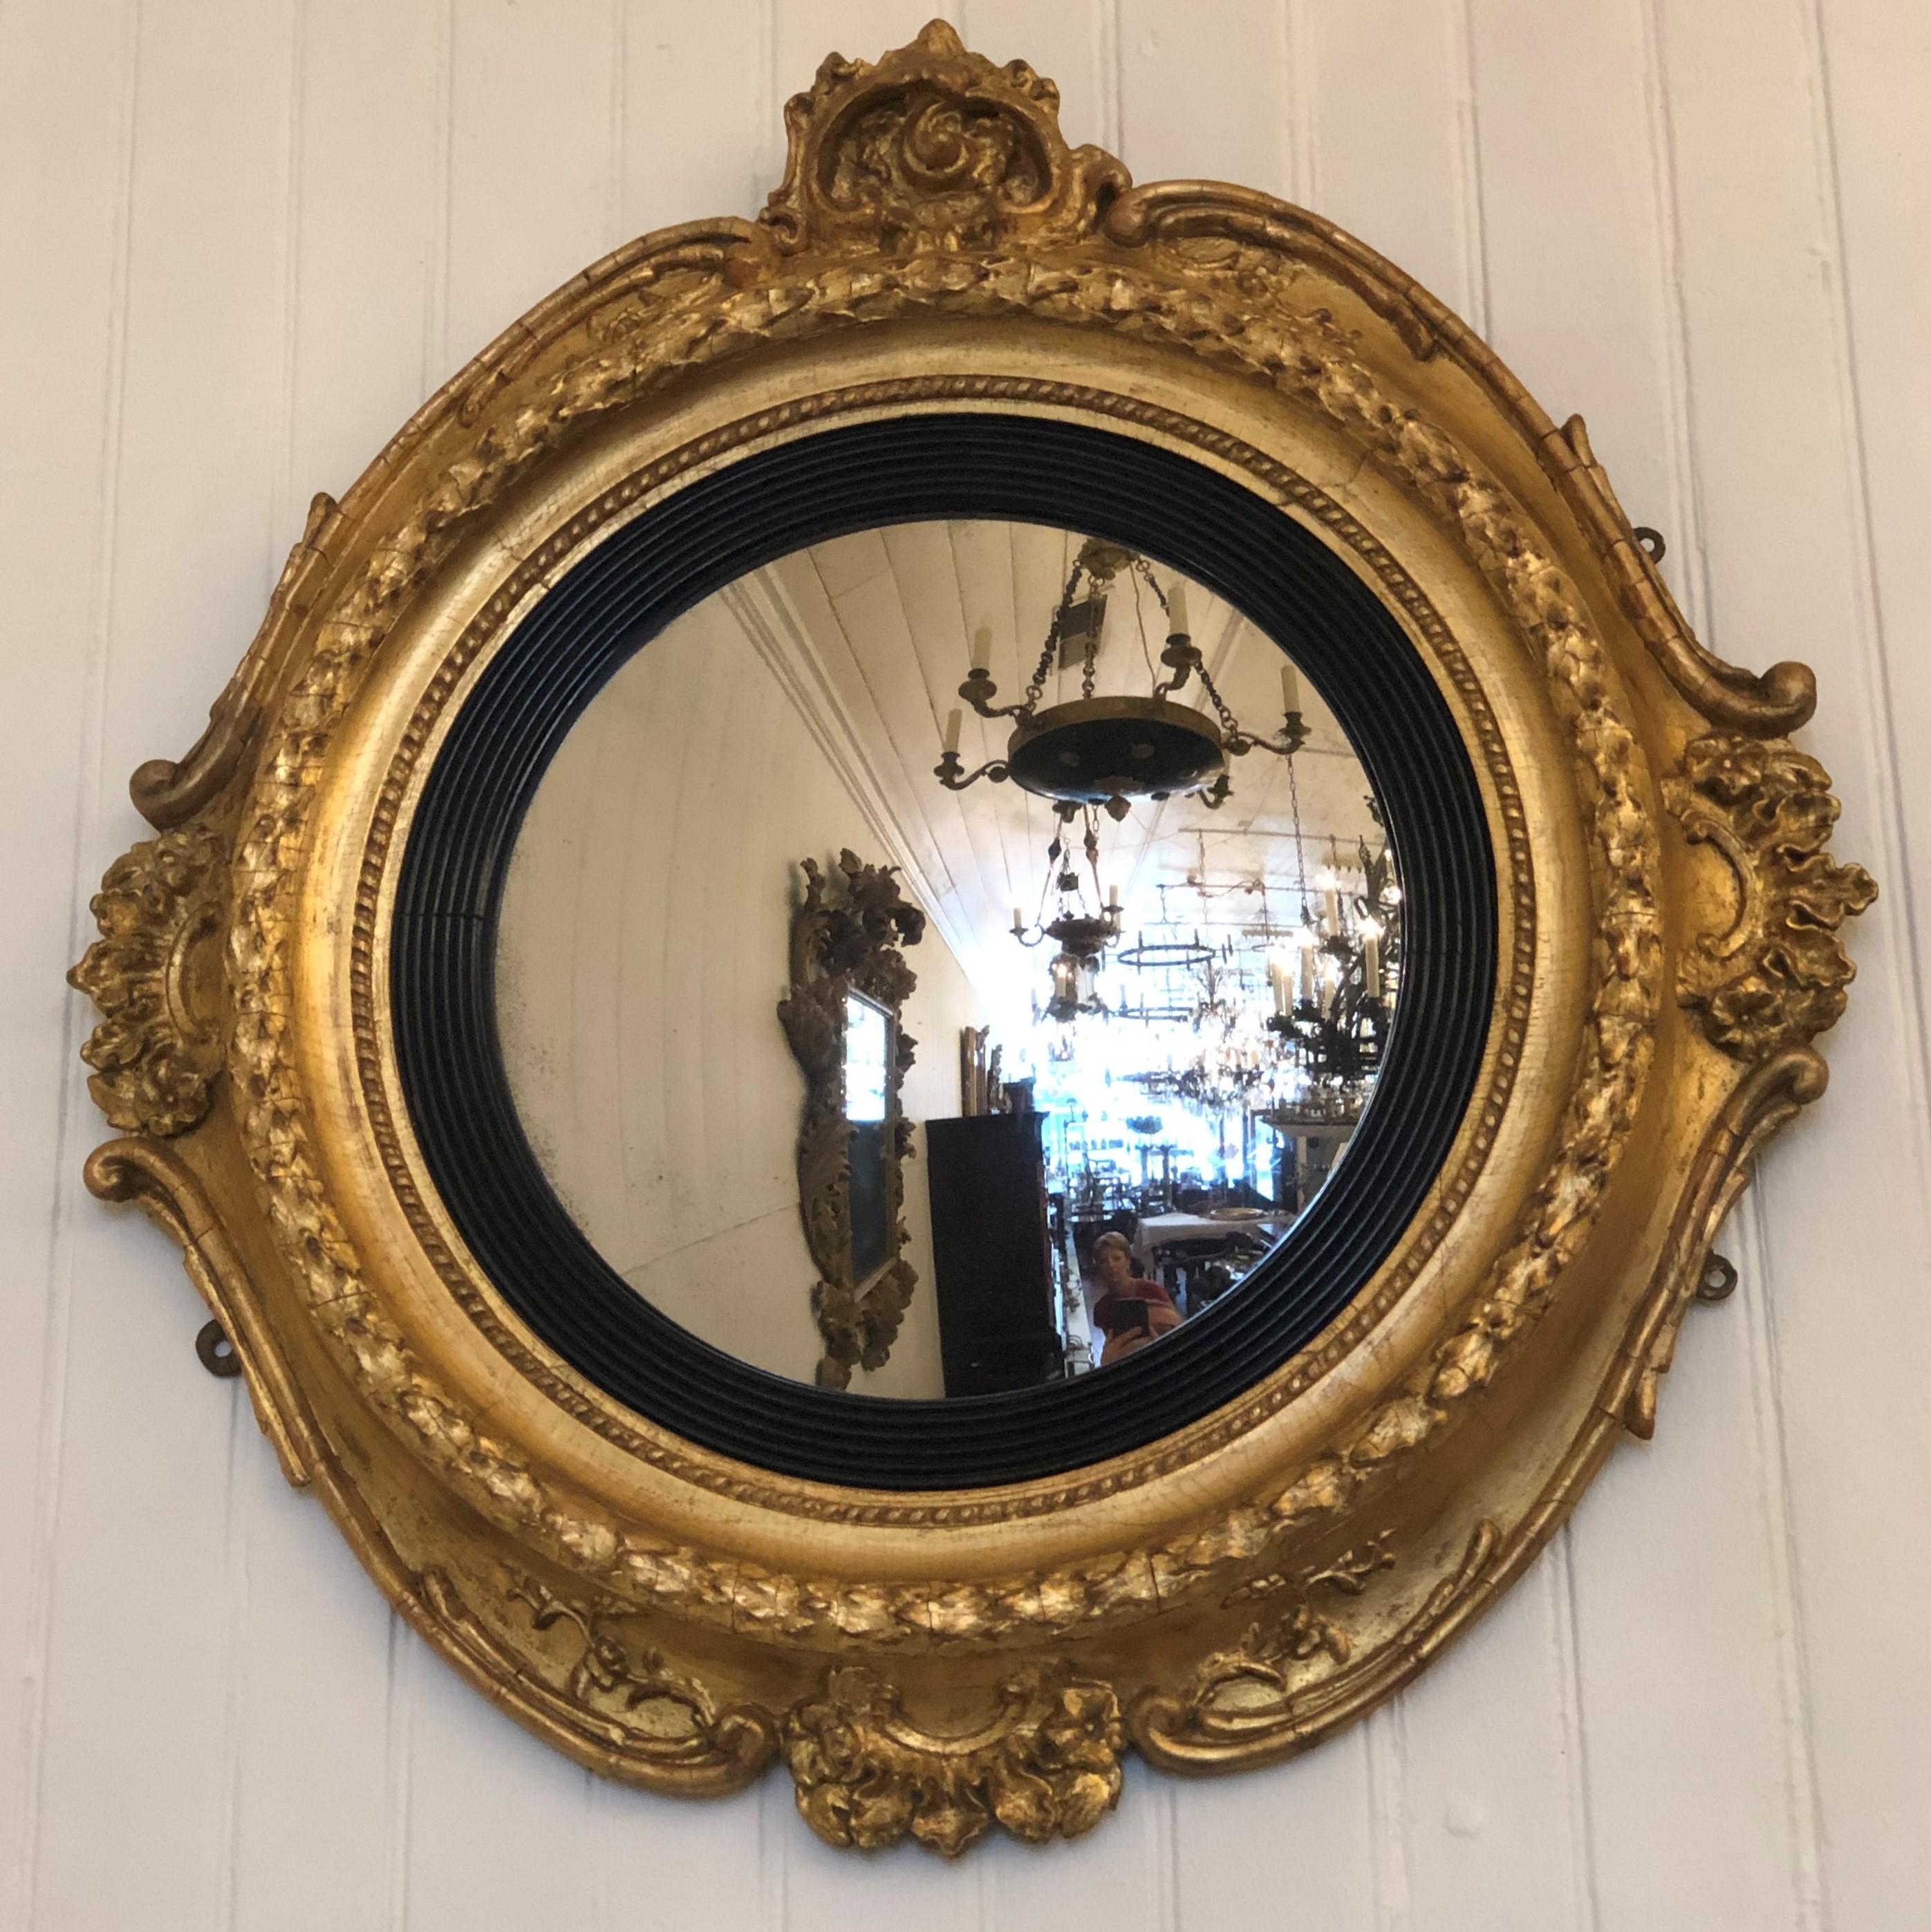 Diese 1830er Boston konvexen Spiegel hat eine wunderbare geschwungenen Rahmen mit einem Blatt Wappen zentriert auf die vier Viertel. In der Mitte des Rahmens befindet sich ein Ring aus Eichenlaub, der in einen Ring aus geriffeltem Ebenholz übergeht,